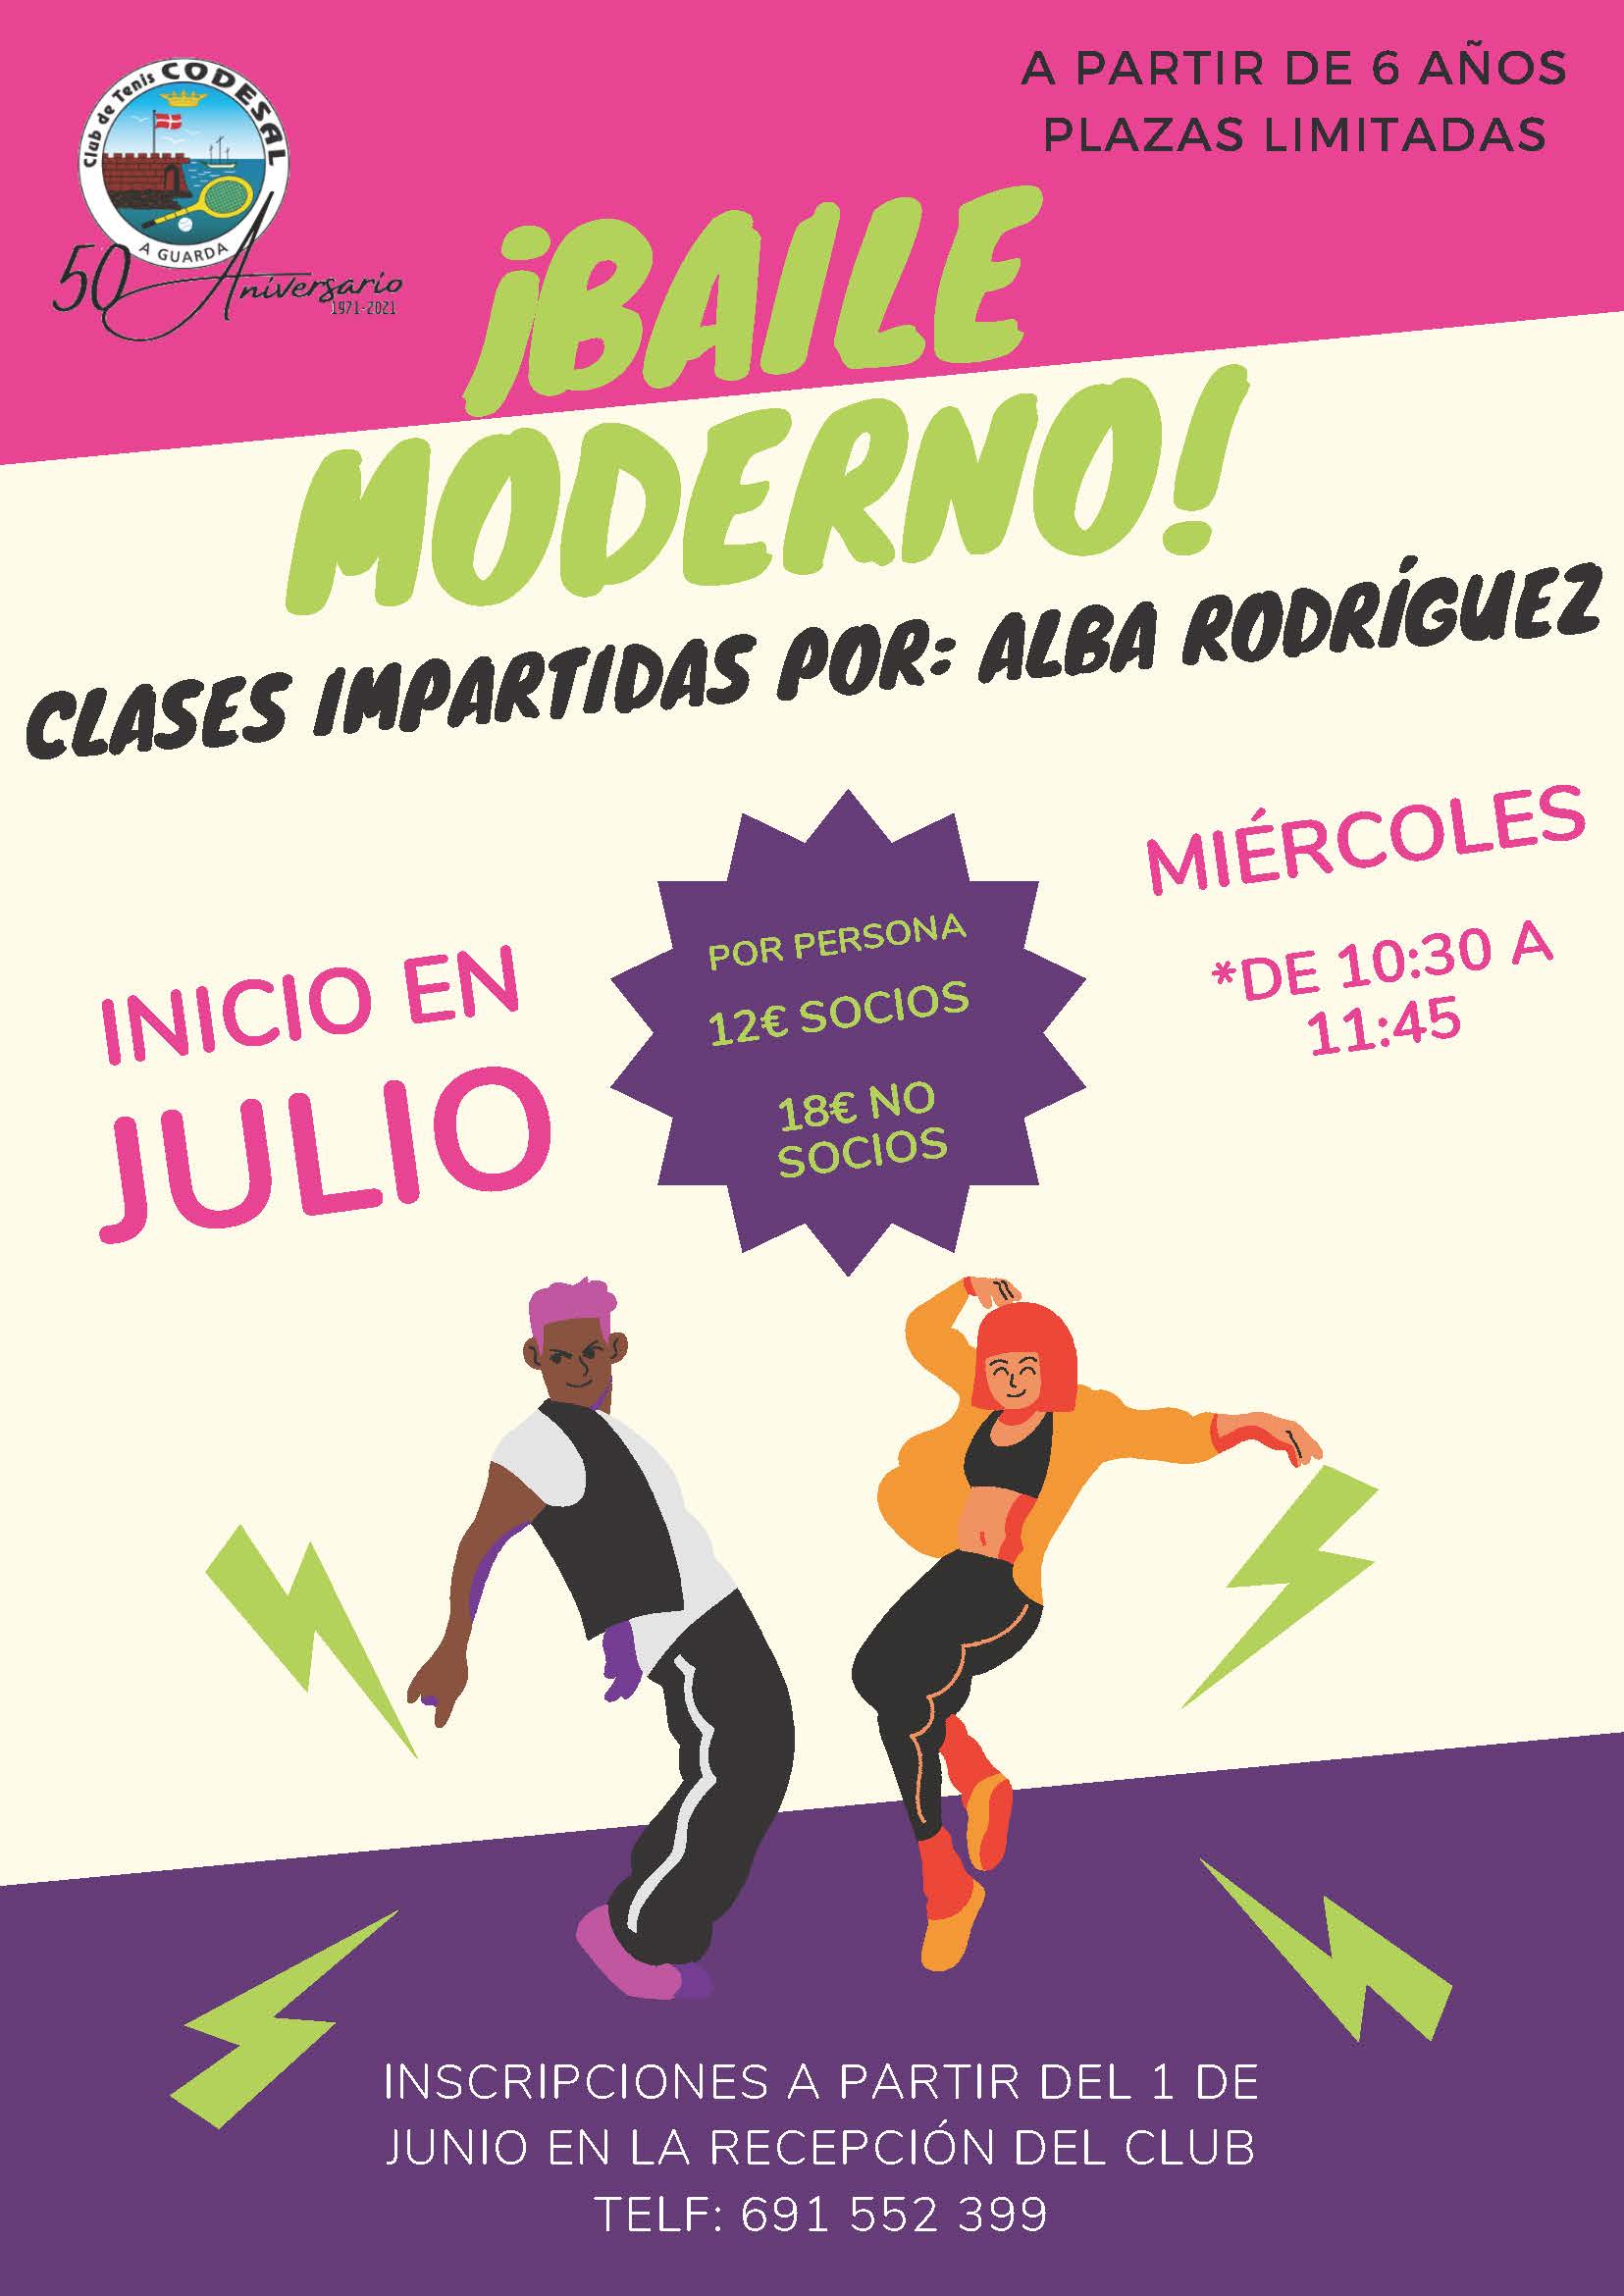 Clases de baile moderno impartidas por Alba Rodríguez